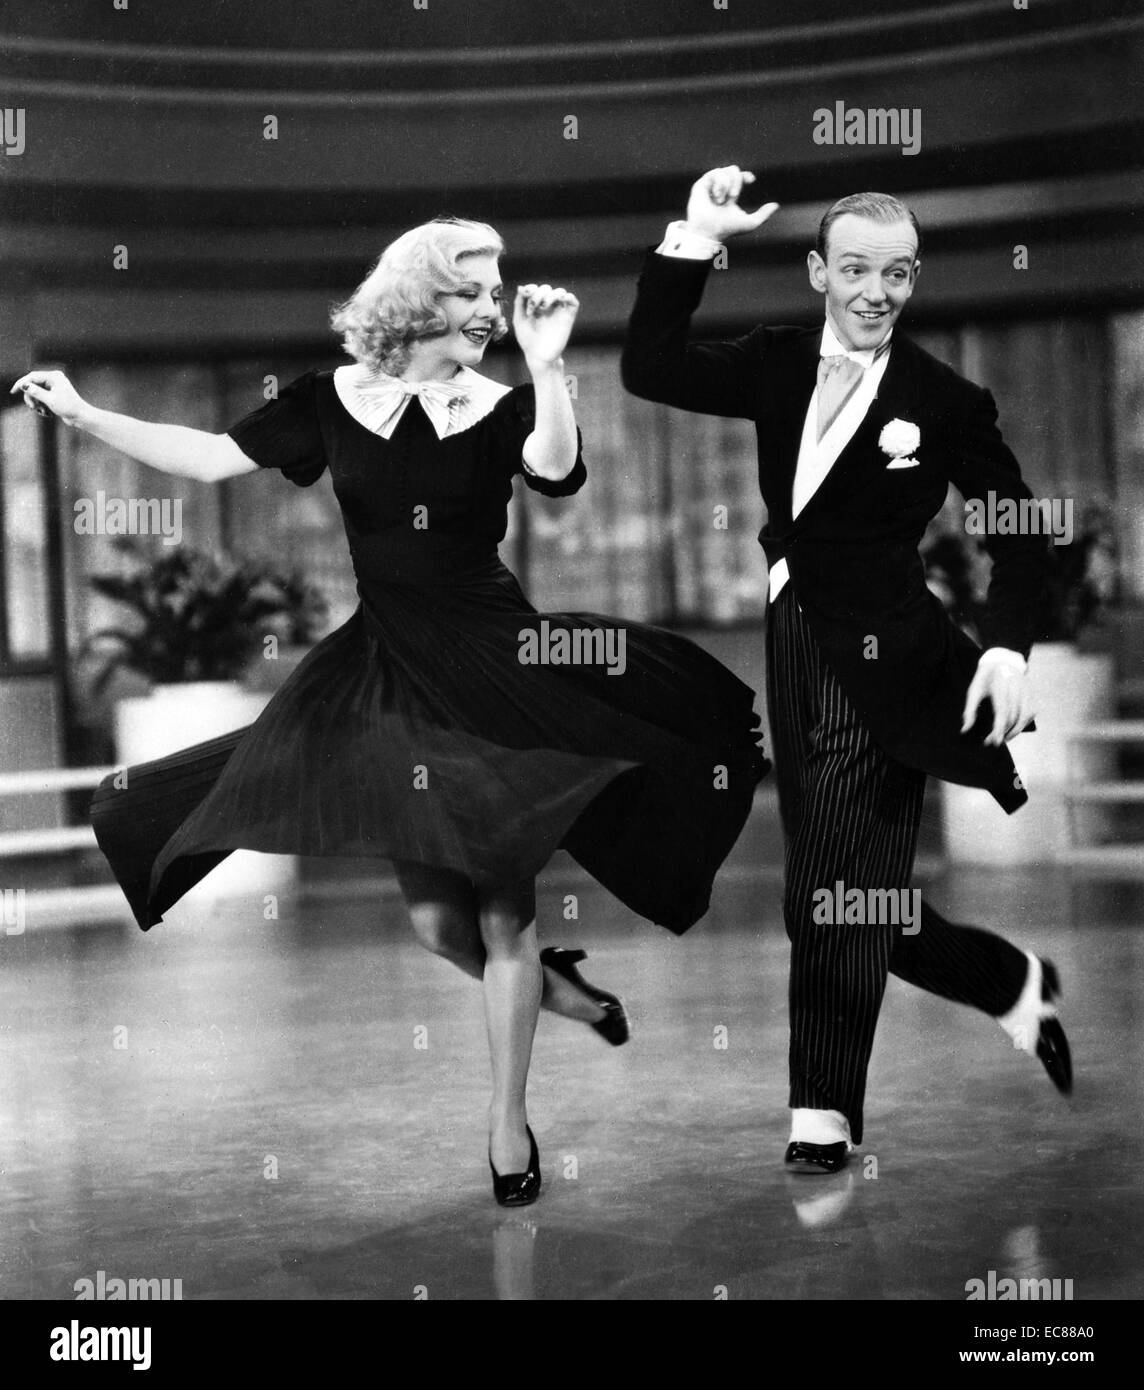 Photo tirée du film 'Swing' une comédie musicale romantique situé dans la ville de New York. Avec Ginger Rogers et Fred Astaire. Datée 1936 Banque D'Images